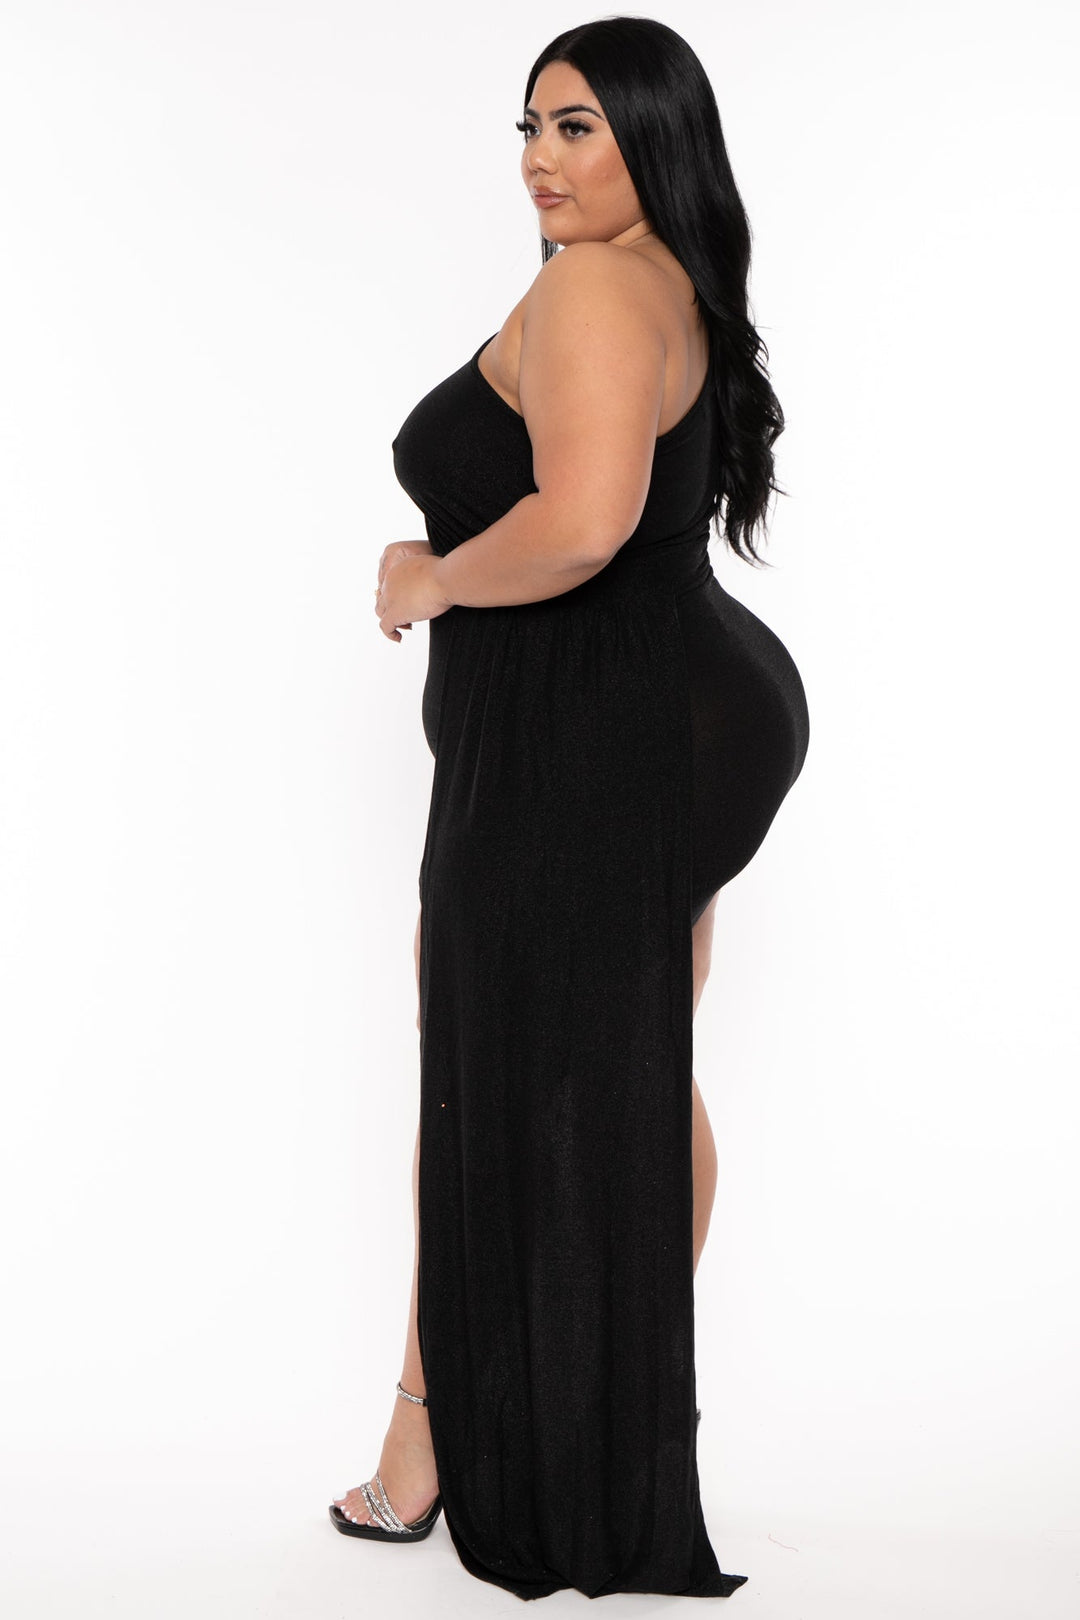 Plus Size Sorel Glitter Bodycon Dress- Black – Curvy Sense